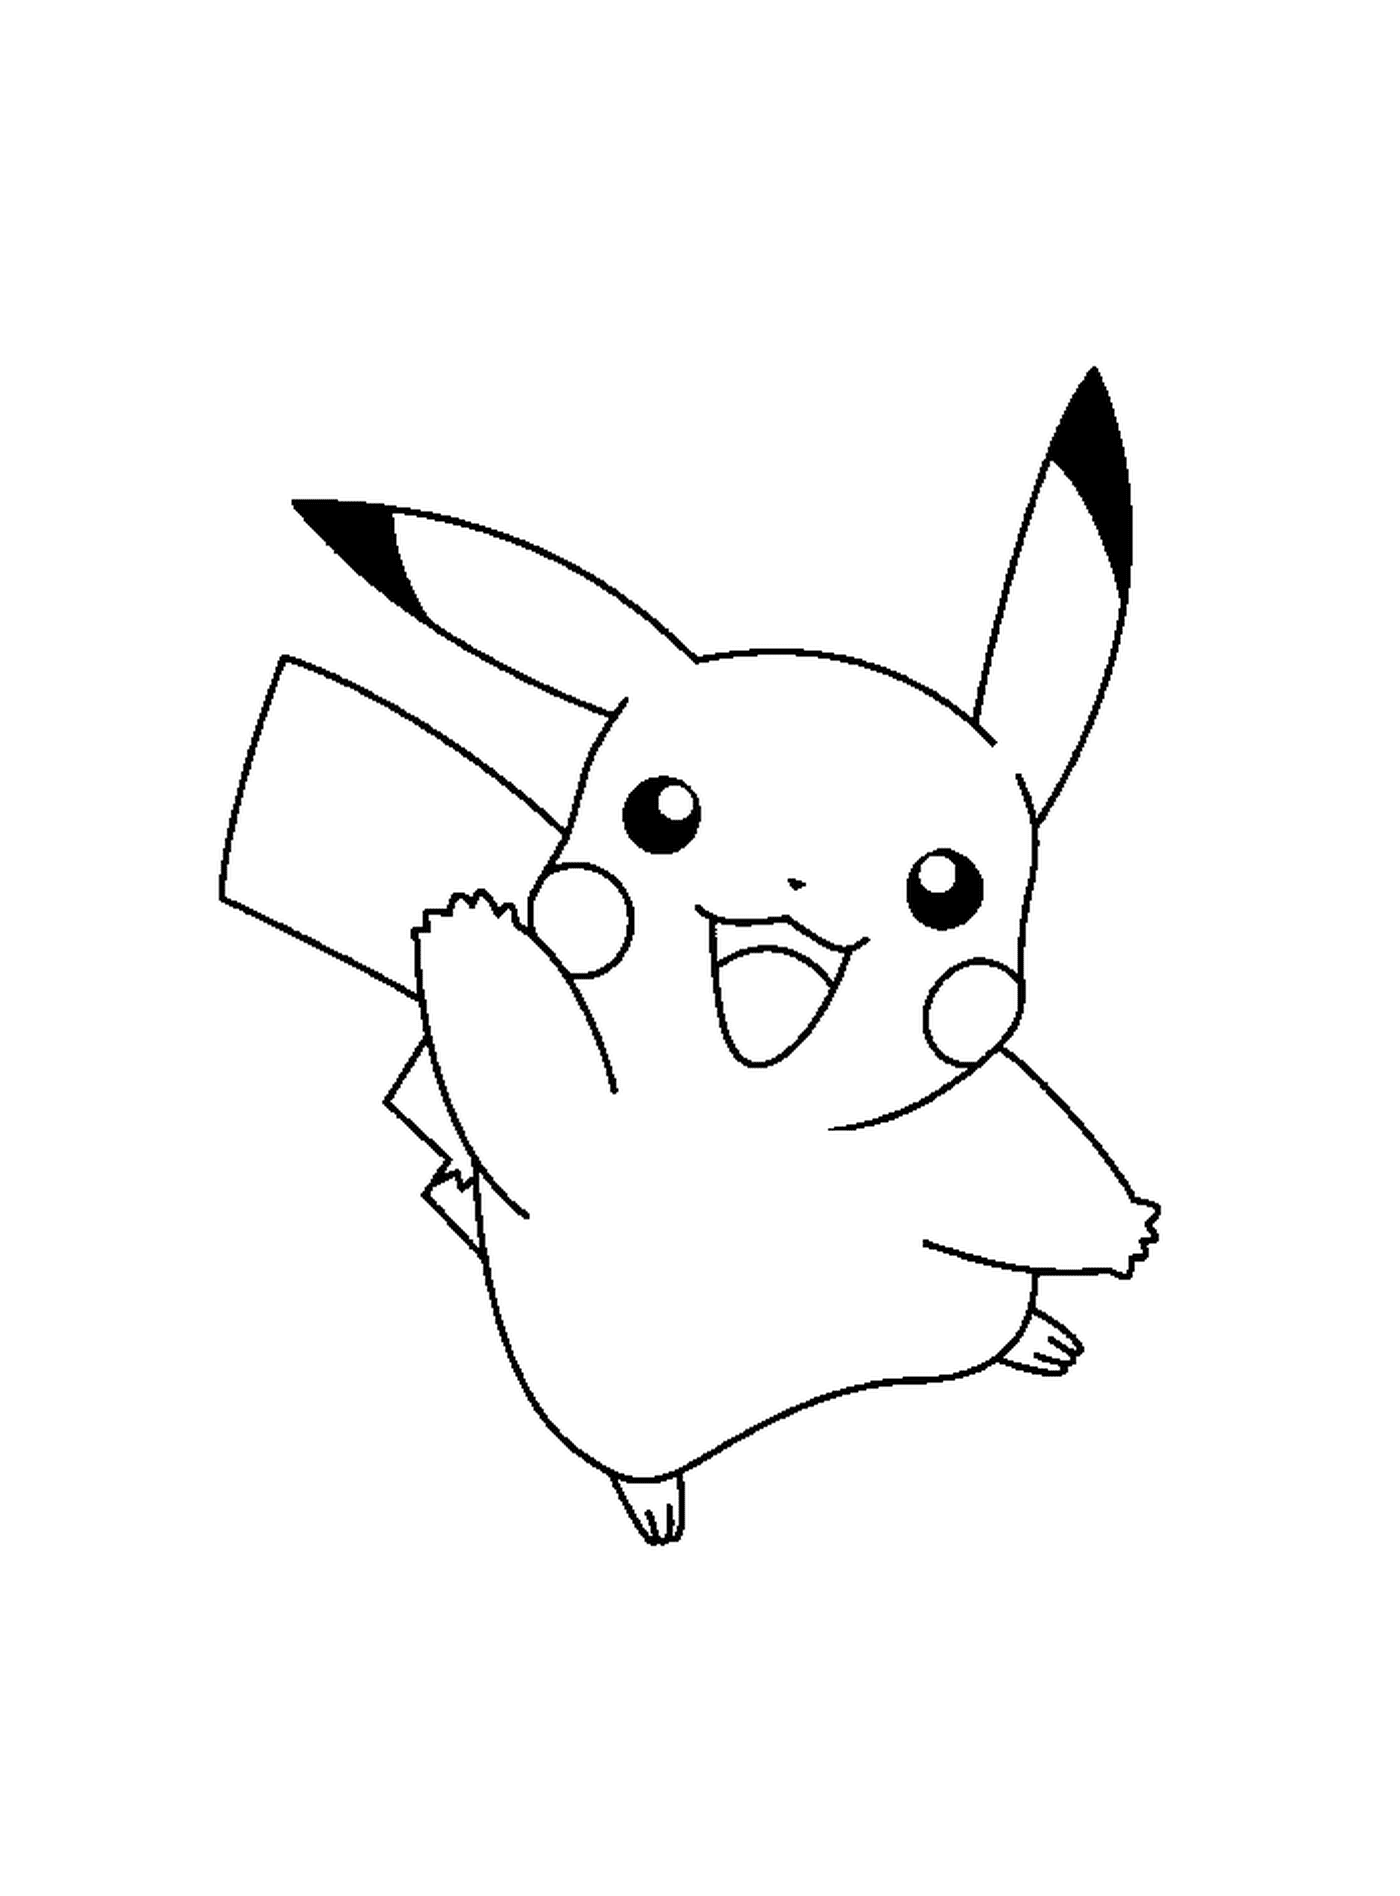   Pikachu avec une expression joyeuse 